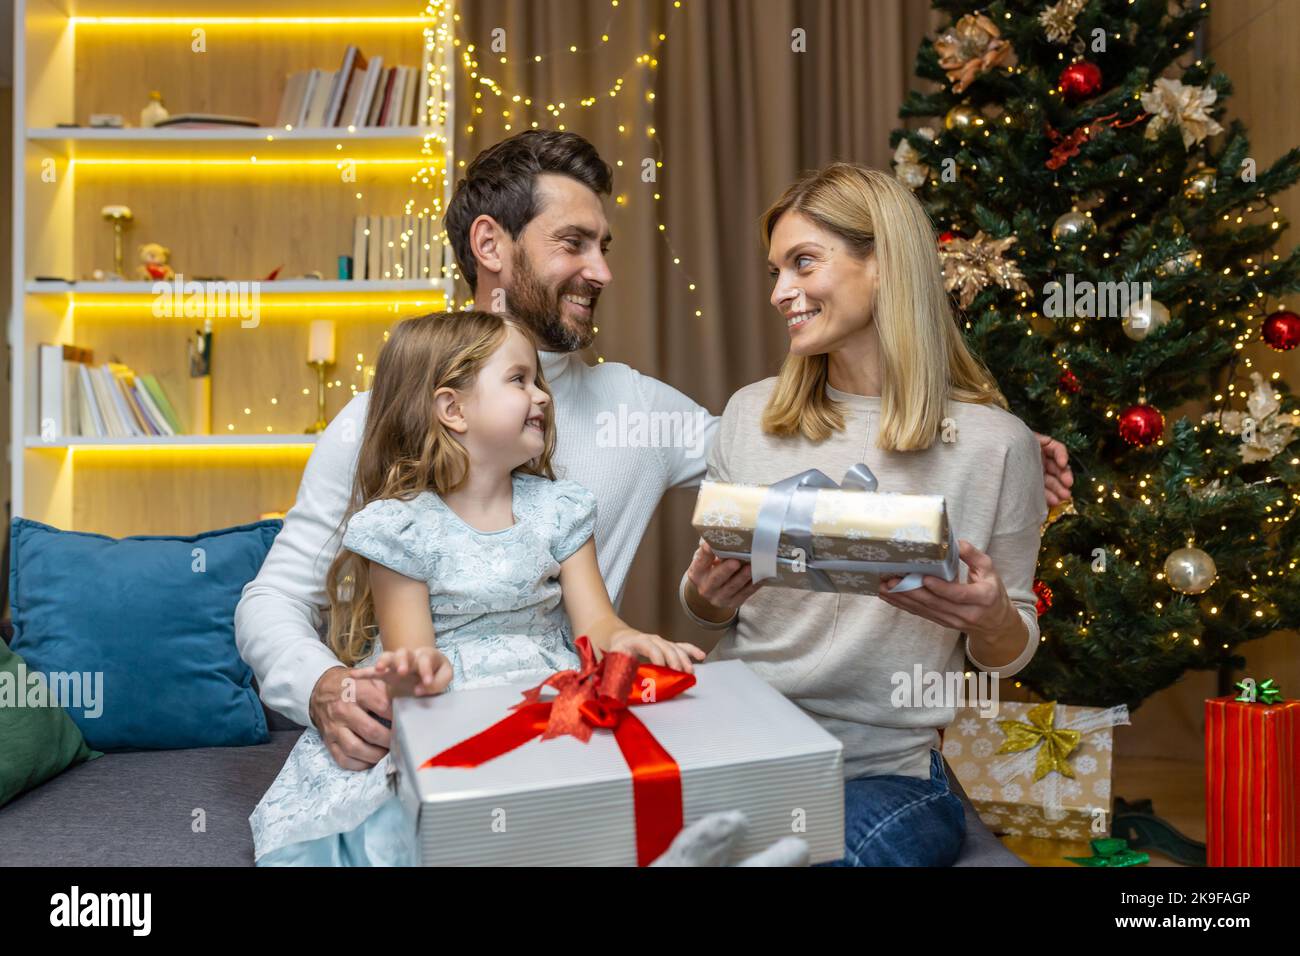 Nouvel an et vacances de Noël, famille heureuse avec fille échangeant des cadeaux et saluant les uns les autres assis sur le canapé près de l'arbre de Noël à la maison. Banque D'Images